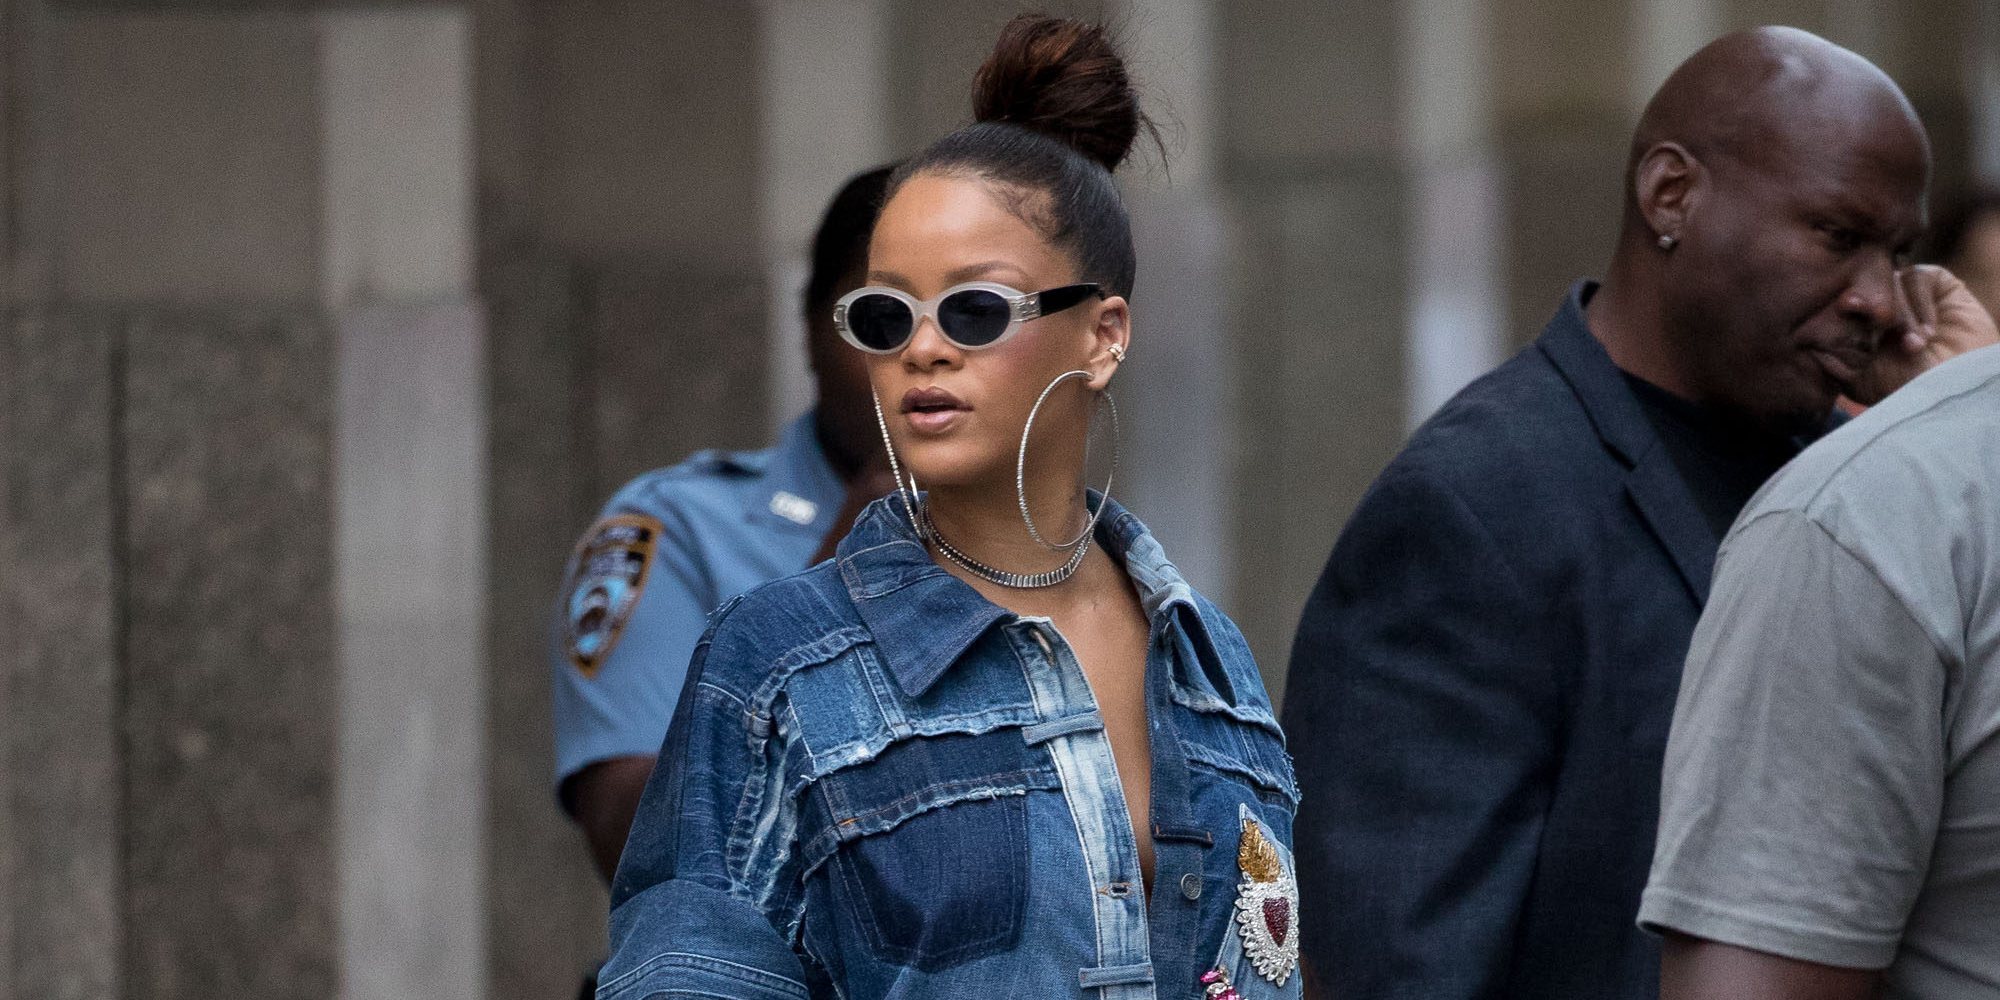 Rihanna revela que lleva un año viviendo en Londres de incógnito